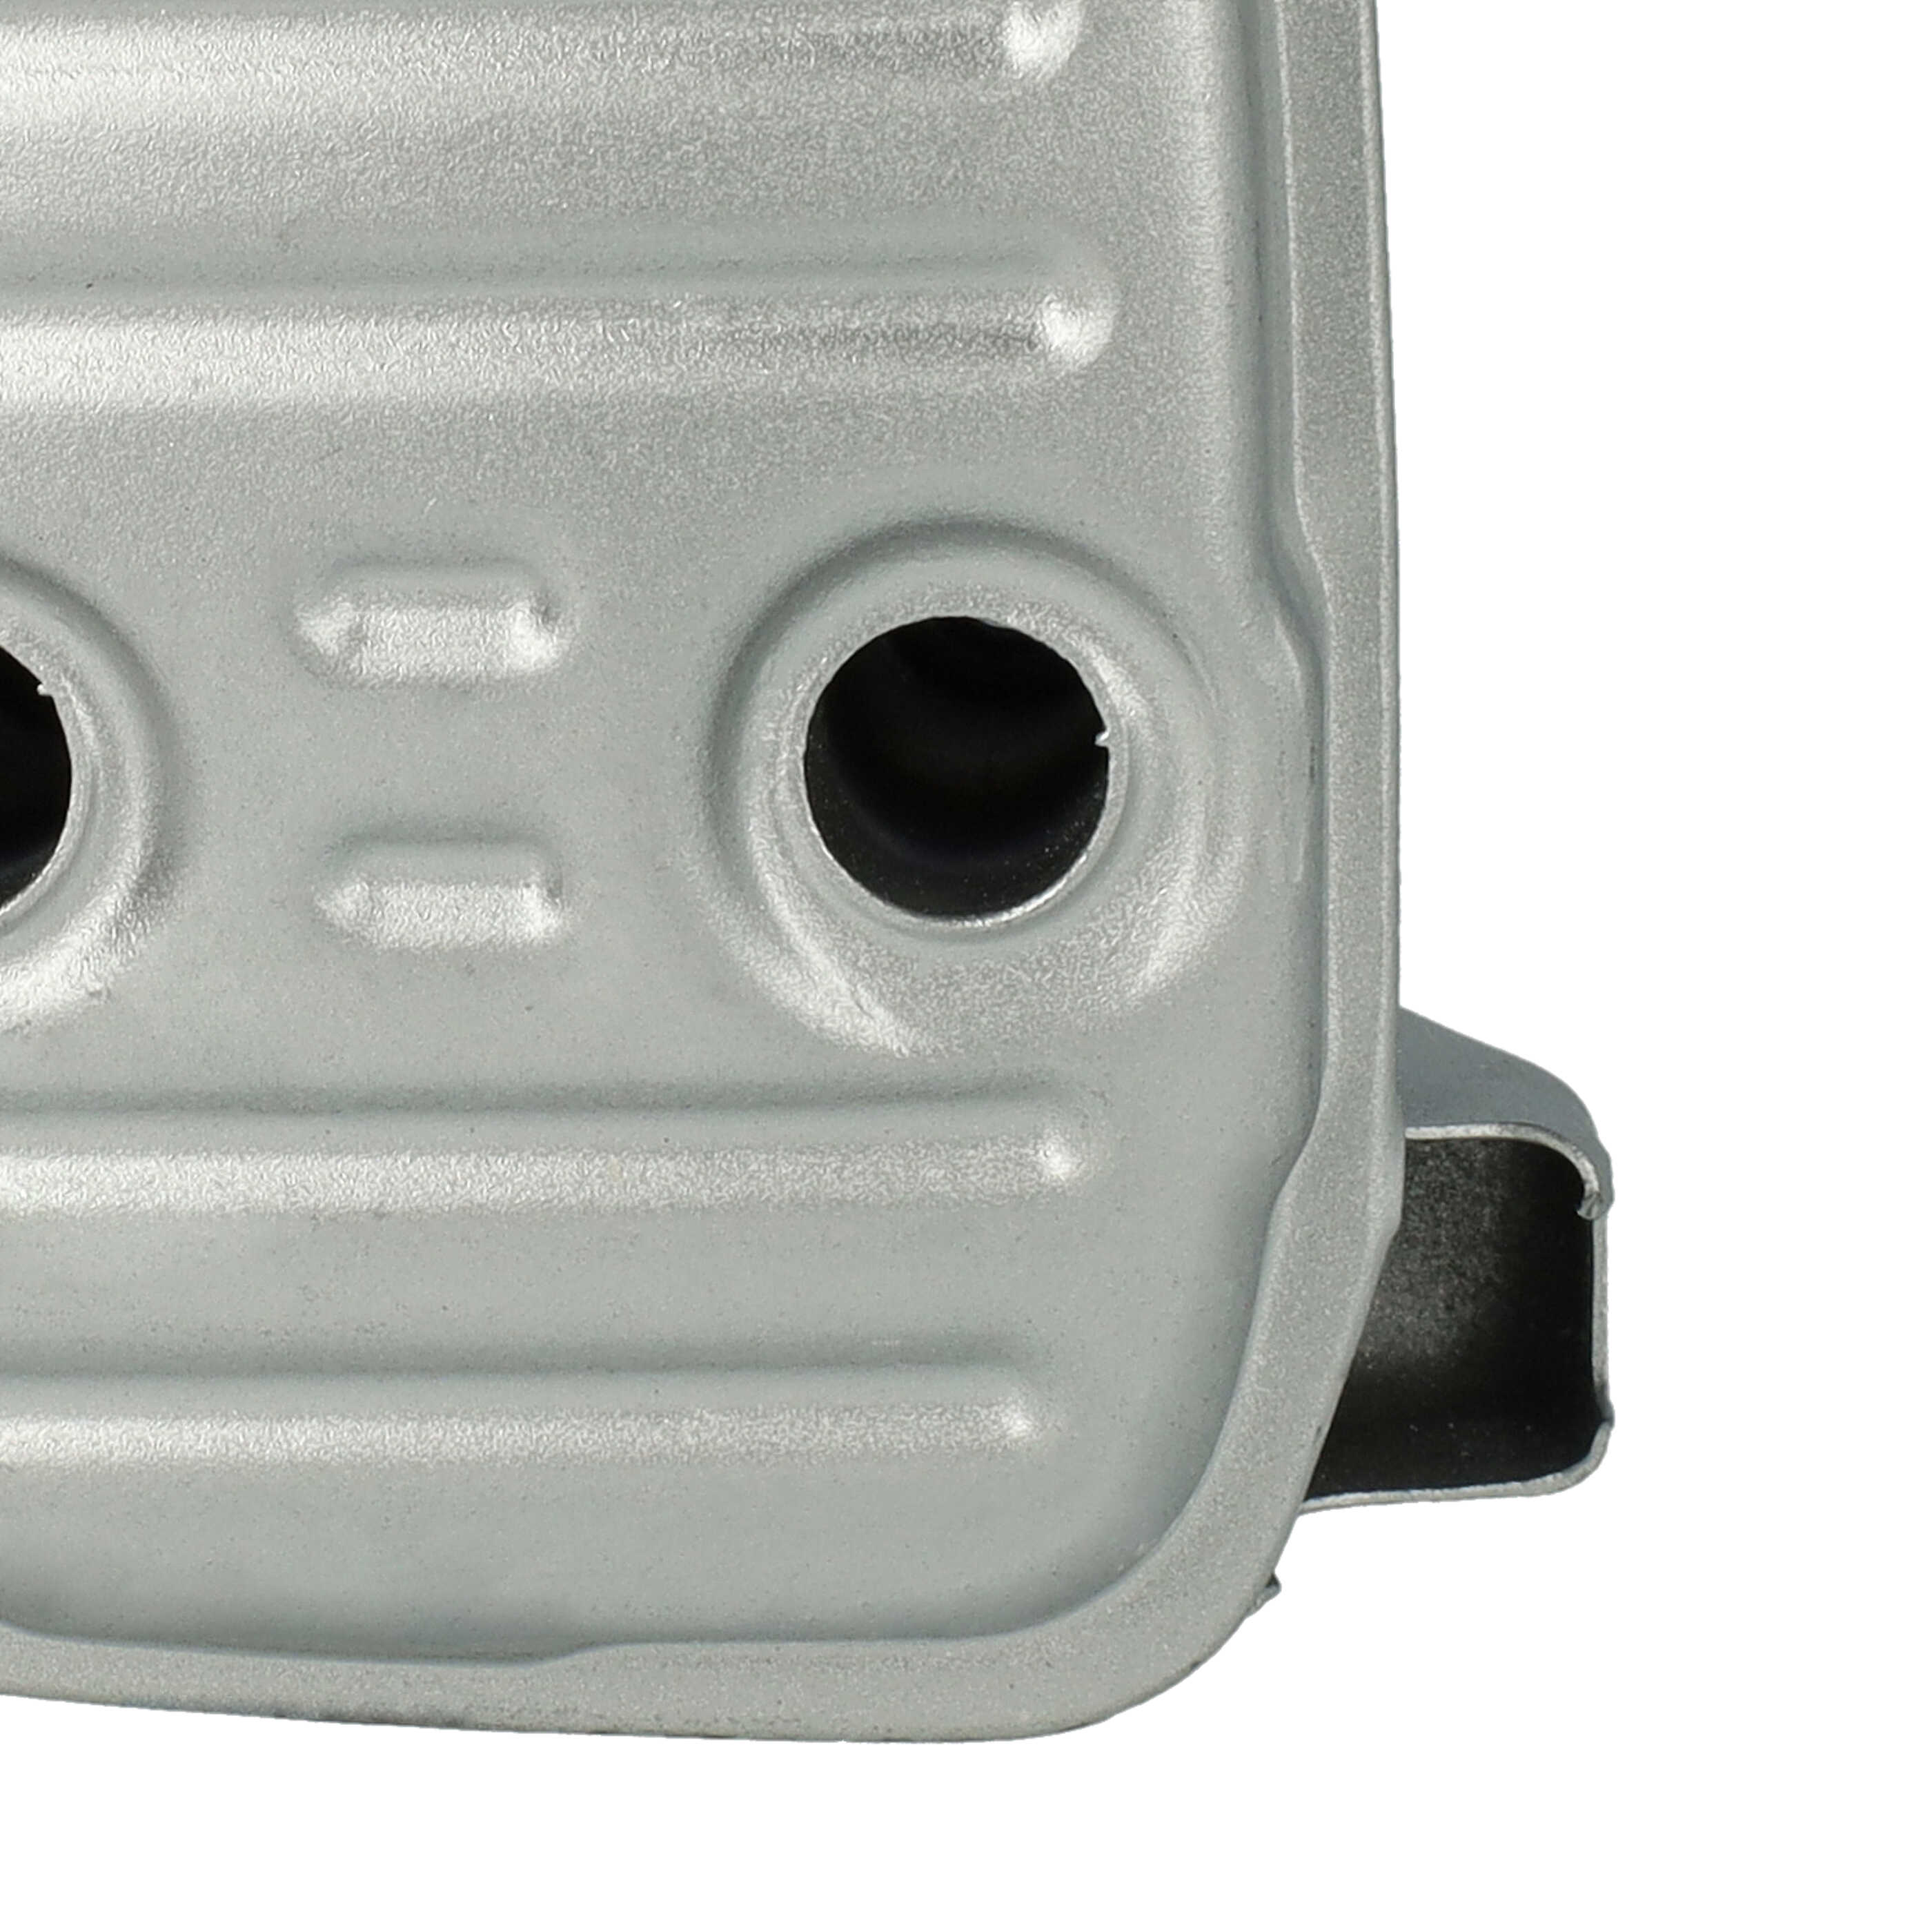 Auspuff-Schalldämpfer als Ersatz für Stihl 1143 140 0661 für Stihl Motorsäge - 11 x 8,4 x 6,5 cm